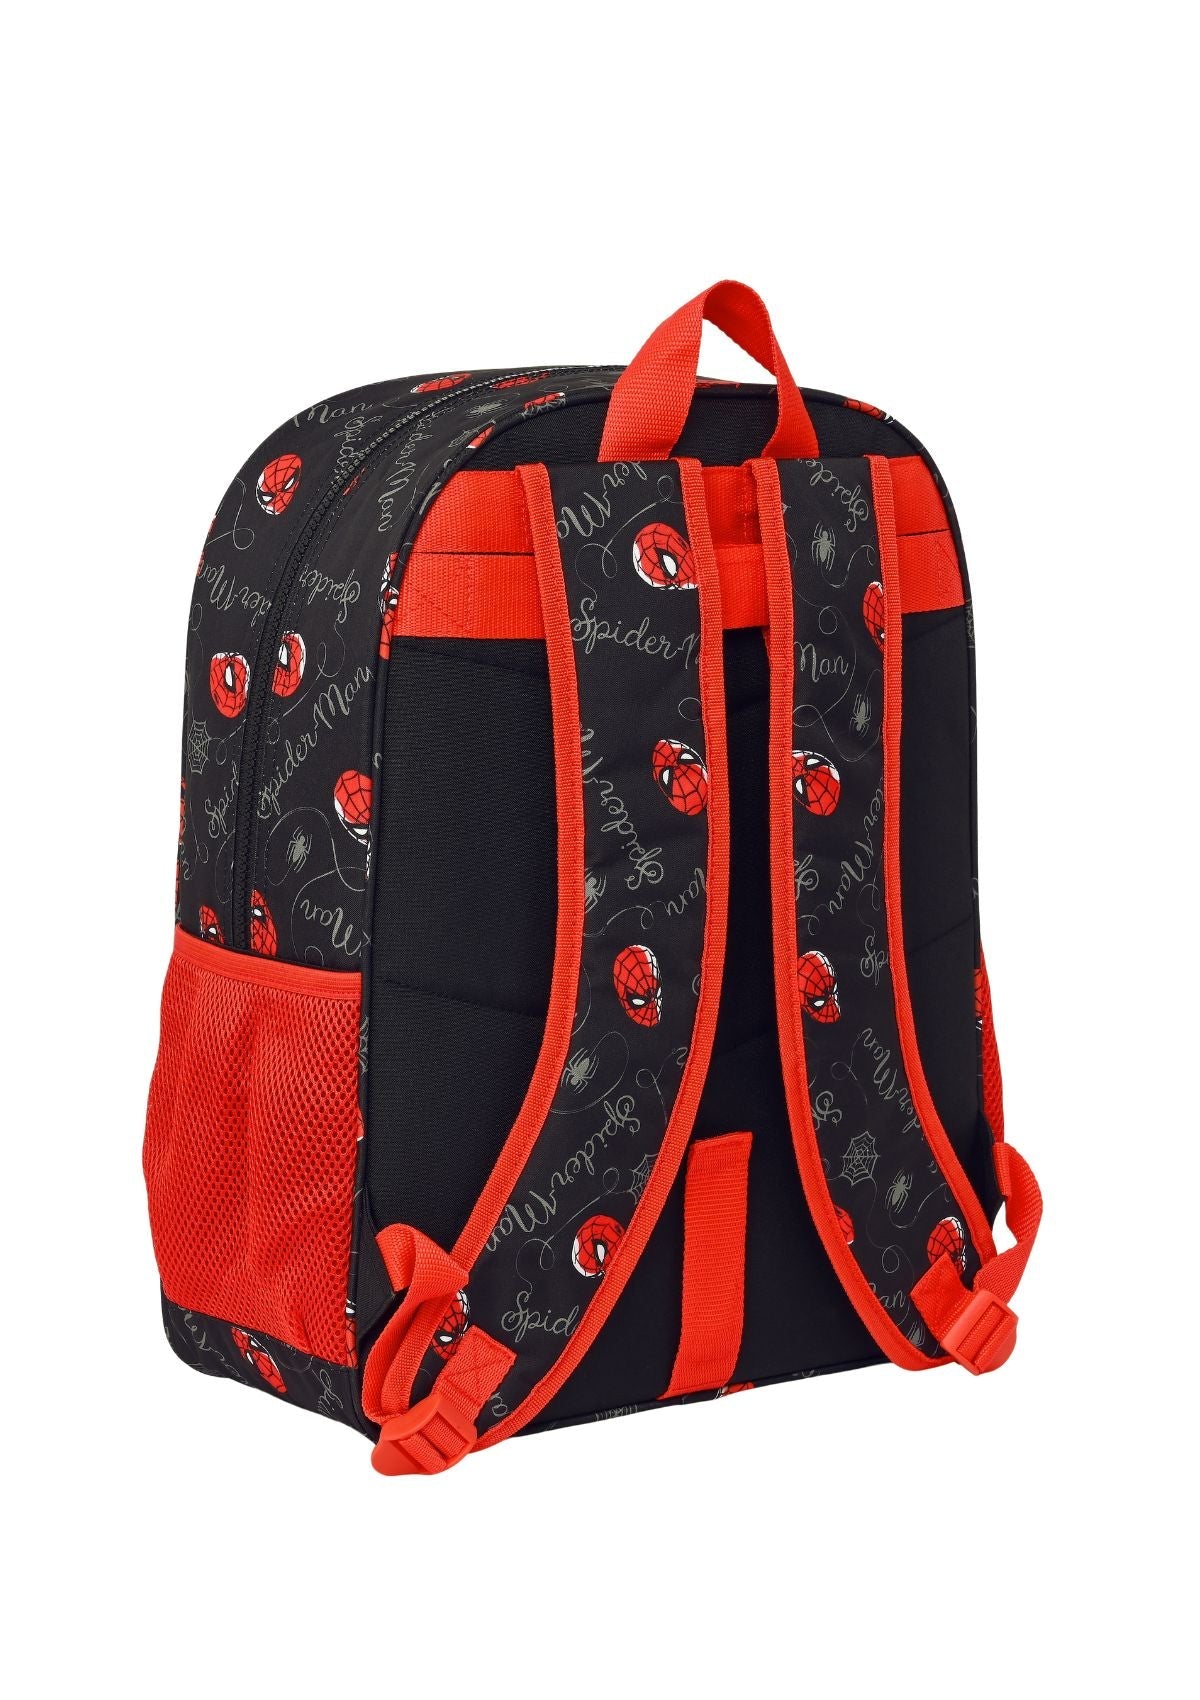 Spider-Man Large Backpack back